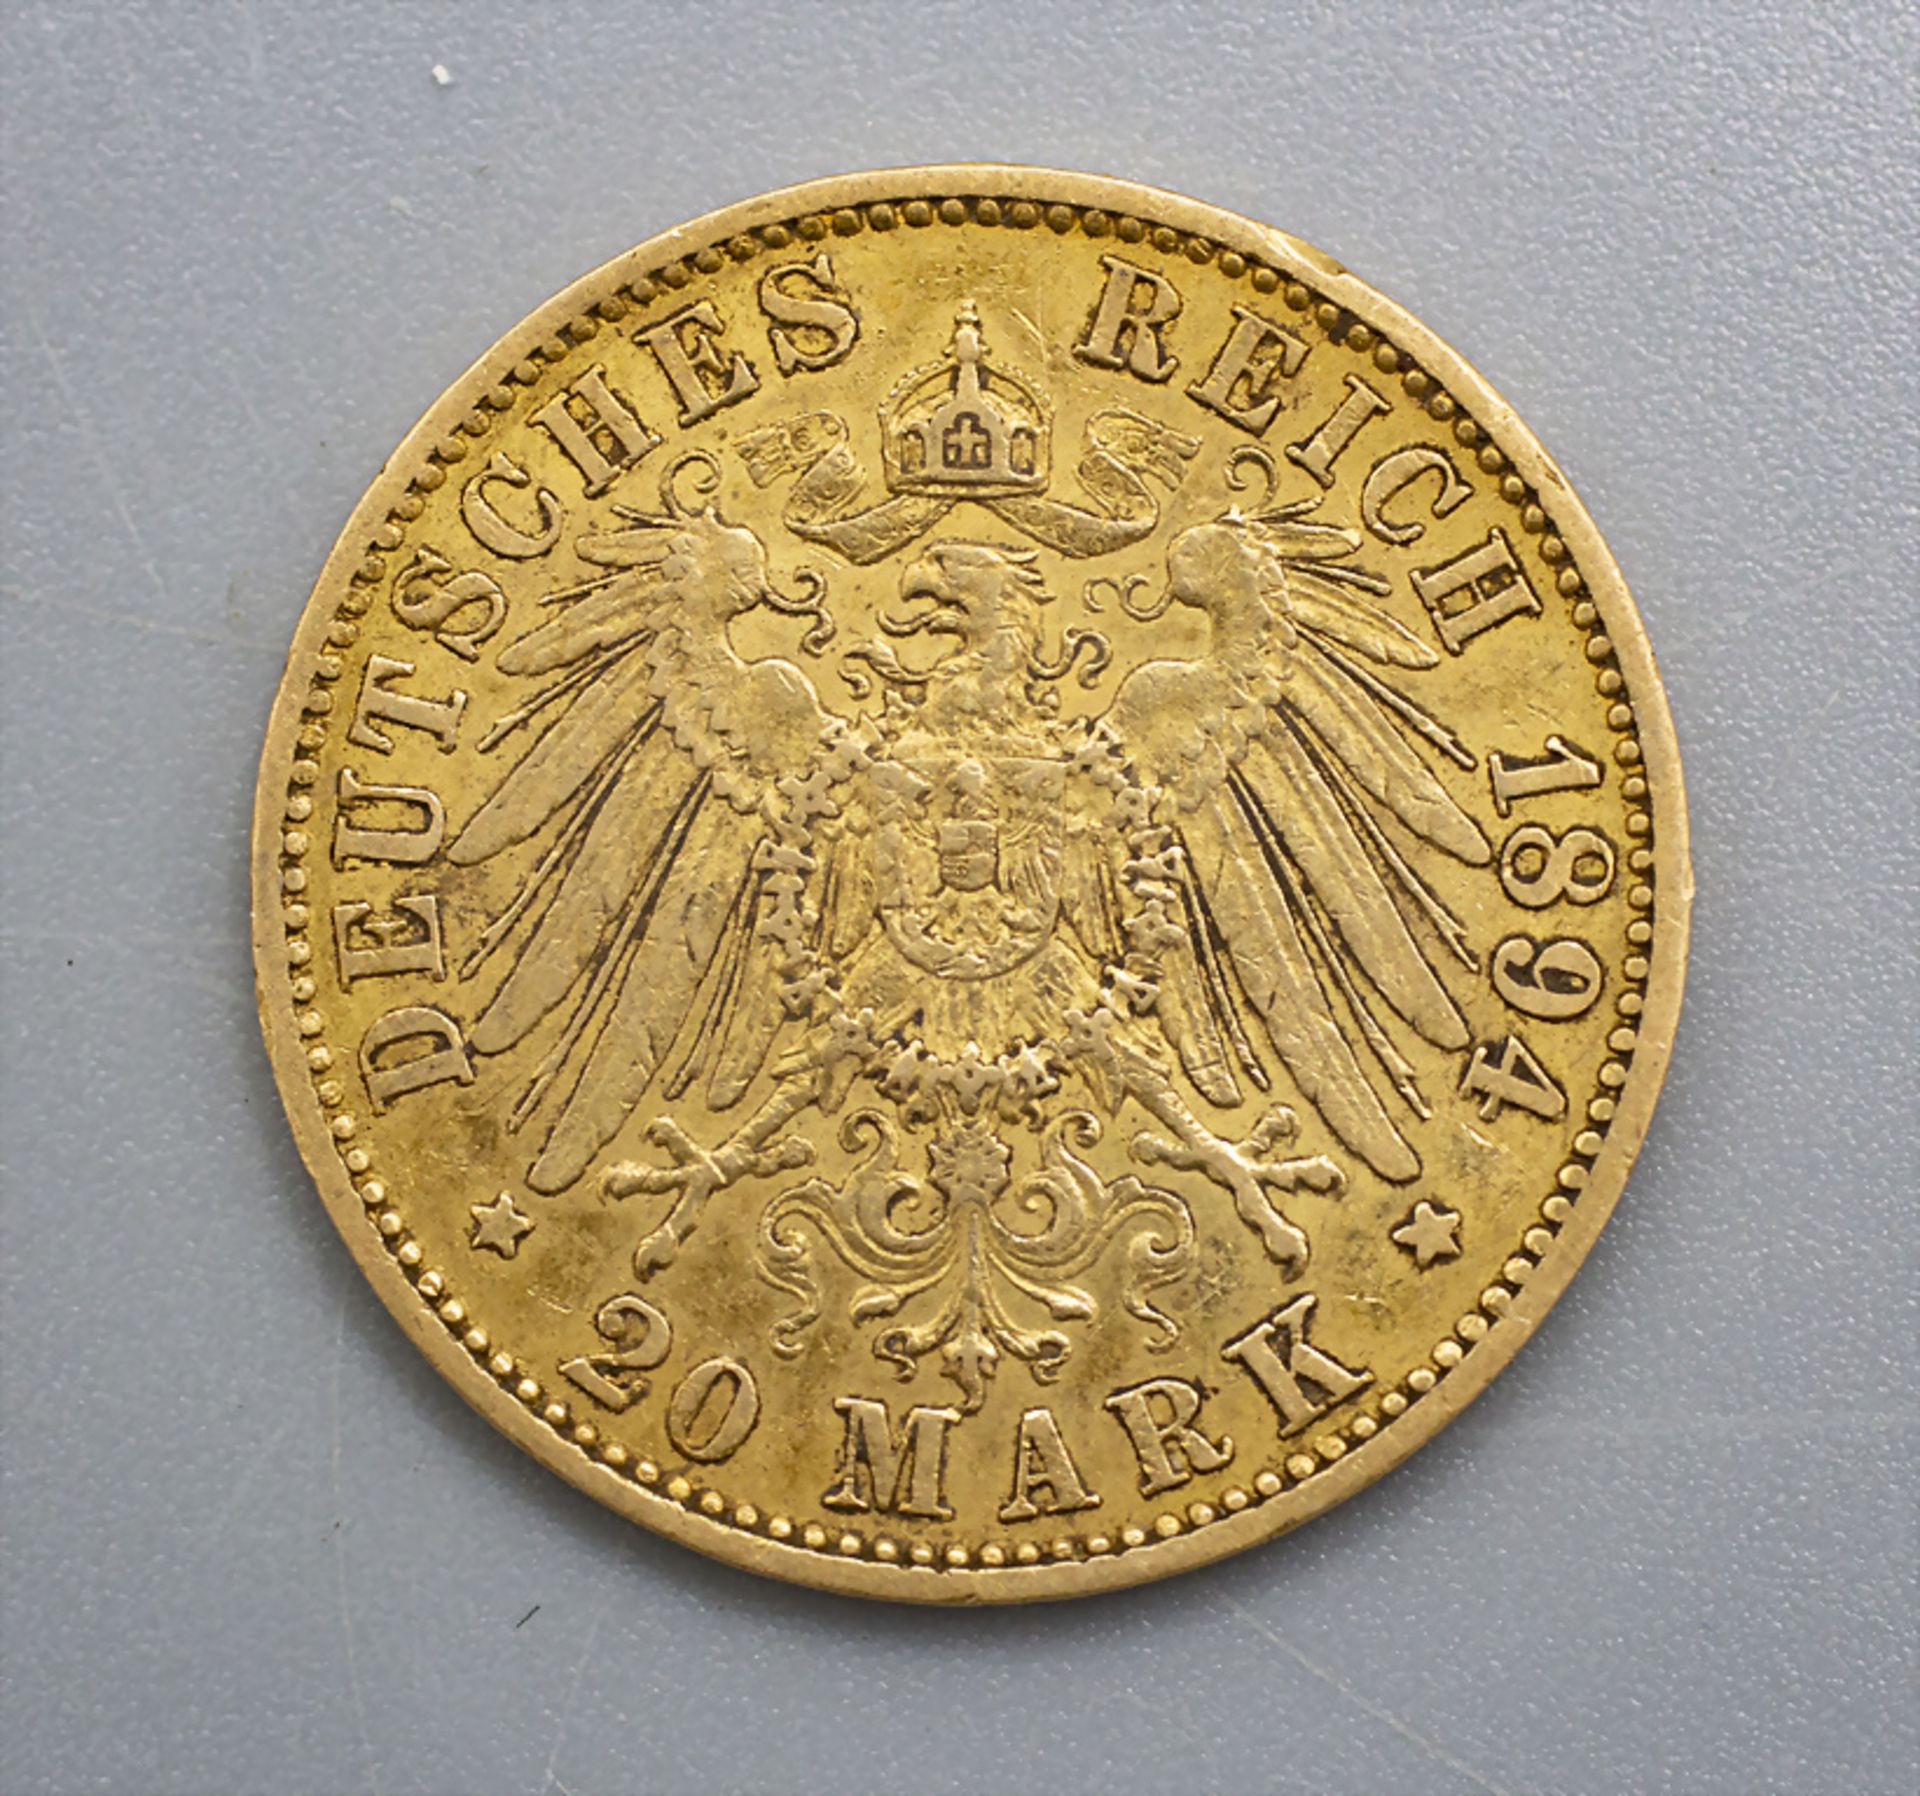 Goldmünze 20 Mark Preussen Kaiser Wilhelm II, 1994 - Image 2 of 2